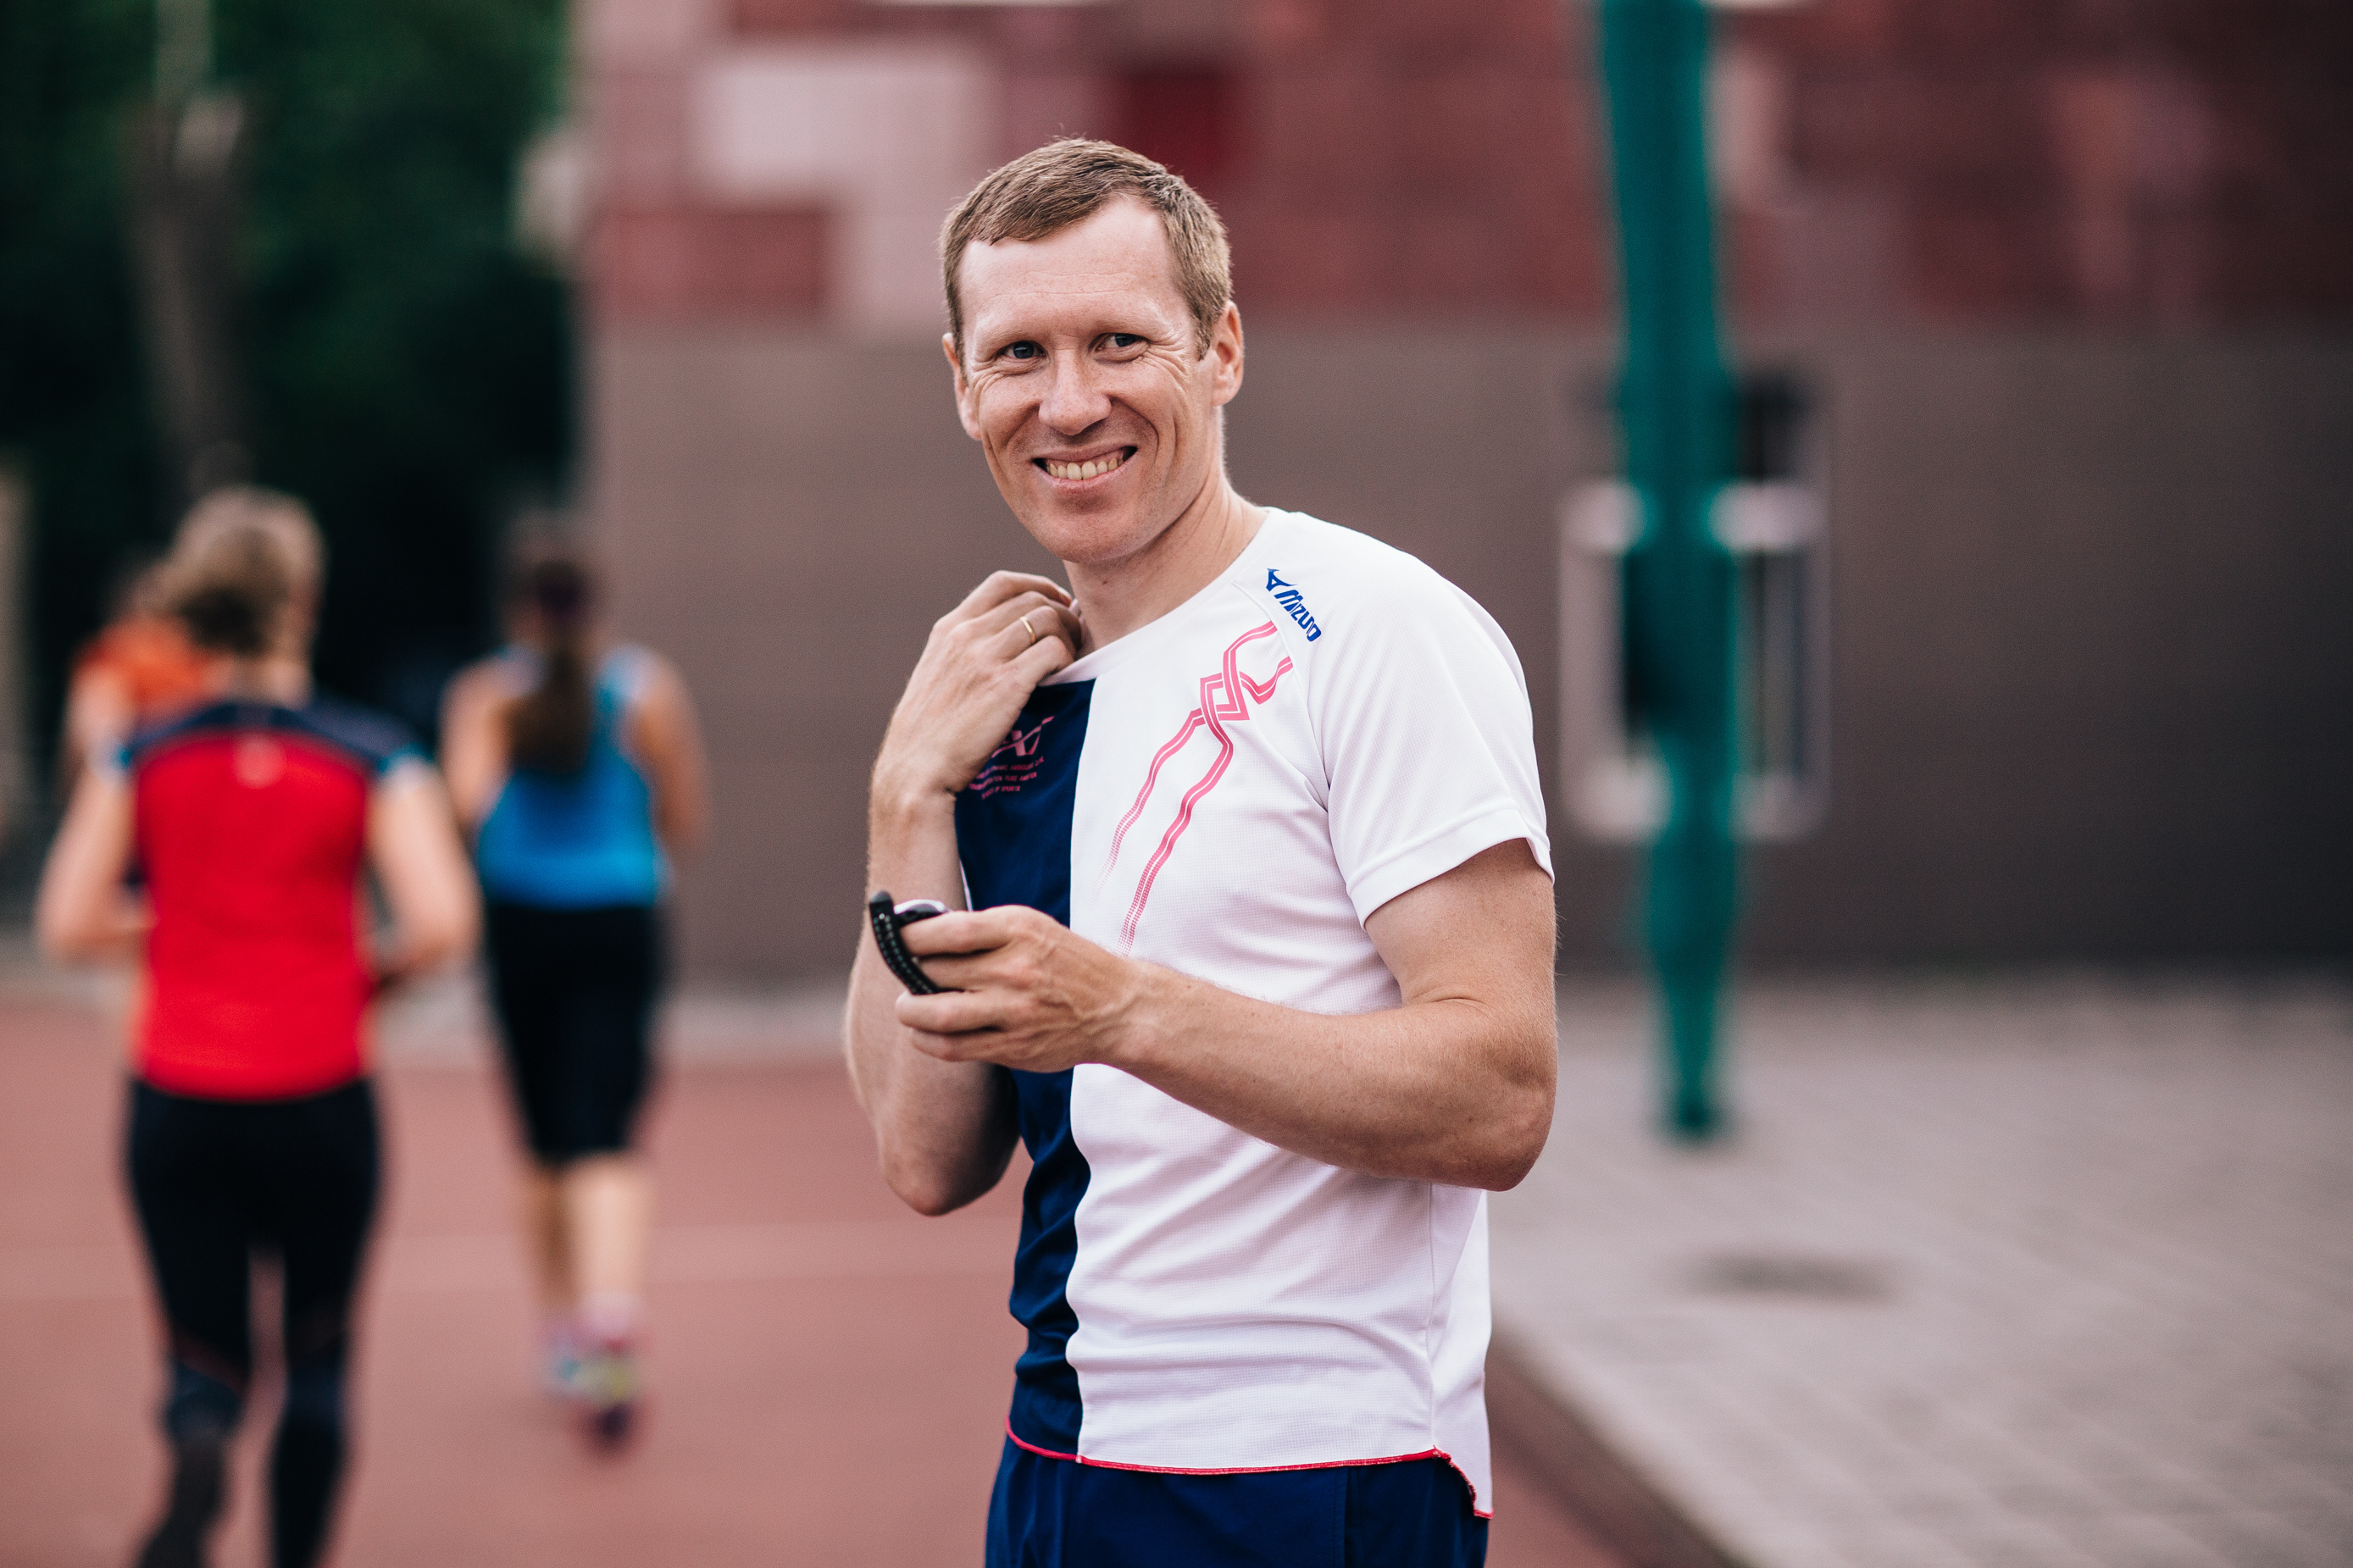 Тренер и марафонец Олег Кульков говорит: за три дня до старта пейте минимум 1,5 литра воды, позвольте организму запастись жидкостью